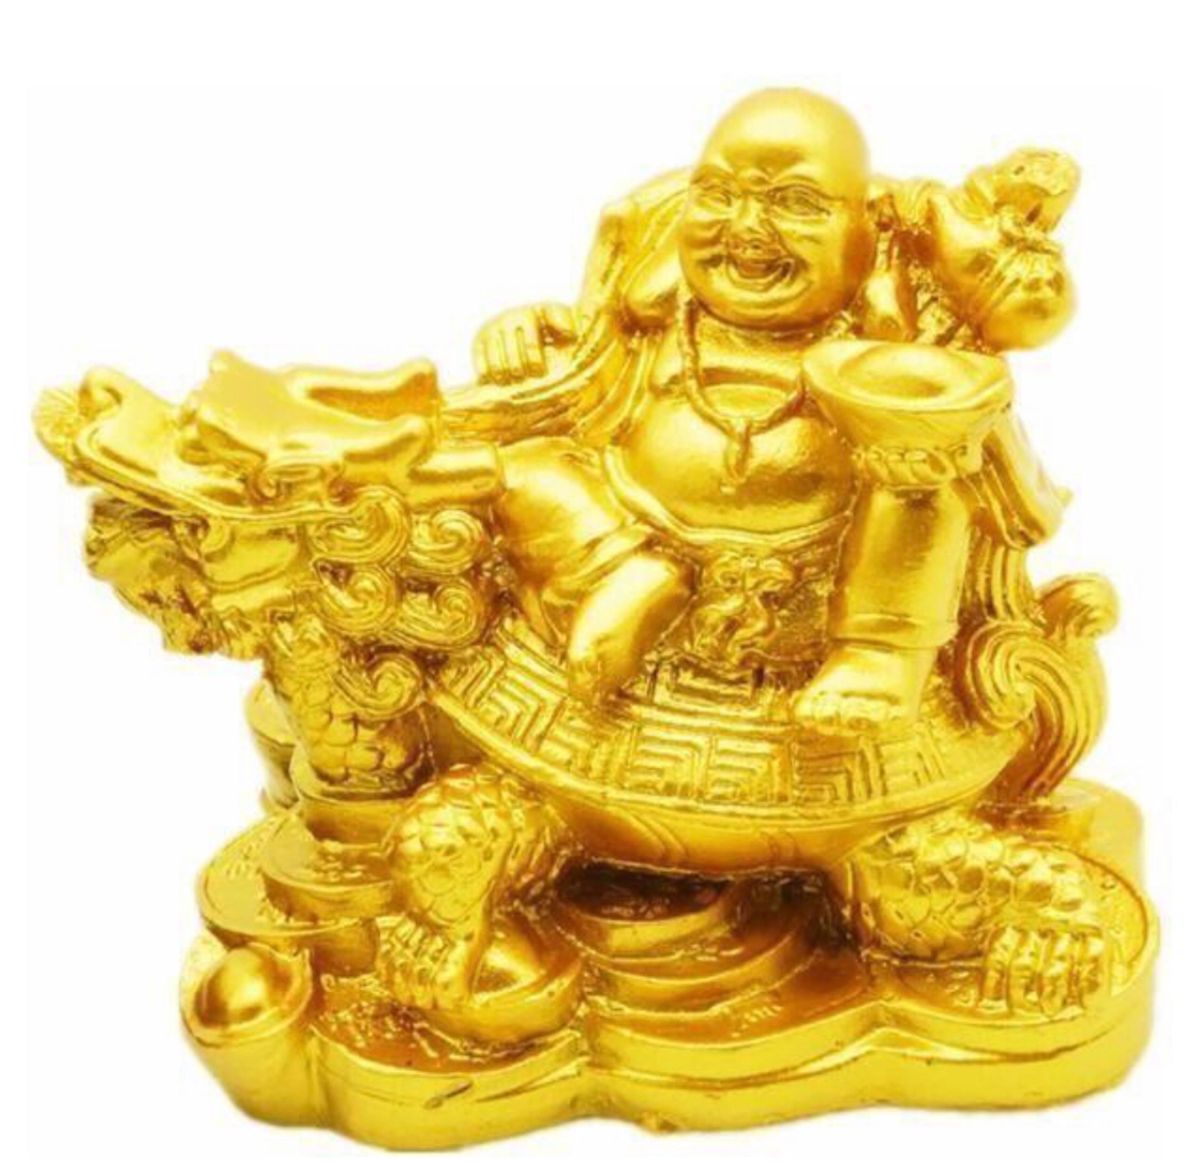 布袋さん 置物 七福神 オブジェ インテリア 龍亀に座っている布袋 弥勒菩薩 仏像 開運 金運アップ 風水グッズ ゴールド